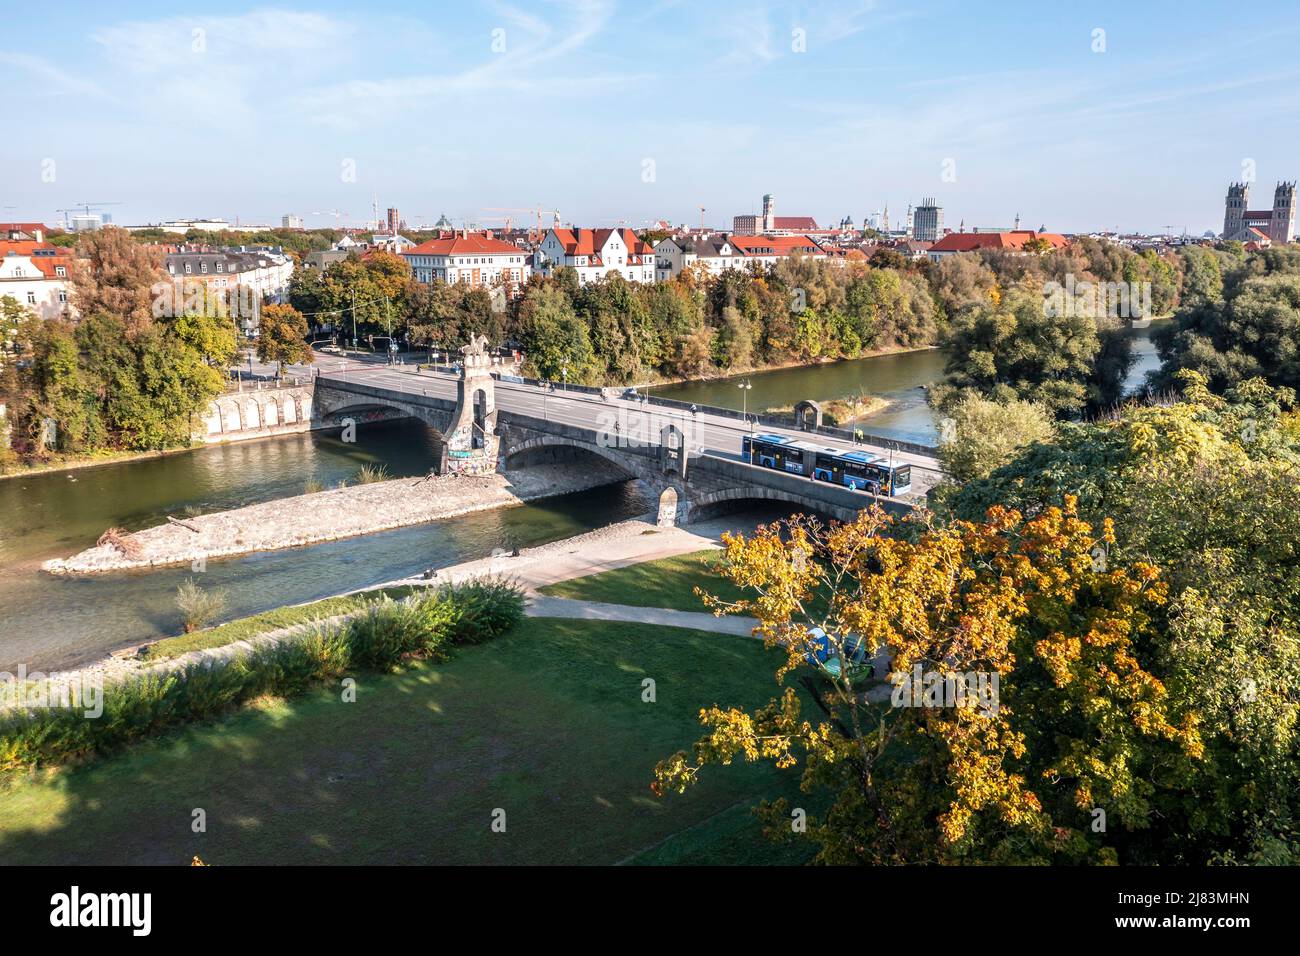 Blick auf die Stadt, Wittelsbacherbrücke, Isar und das Stadtzentrum von München, Bayern, Deutschland Stockfoto